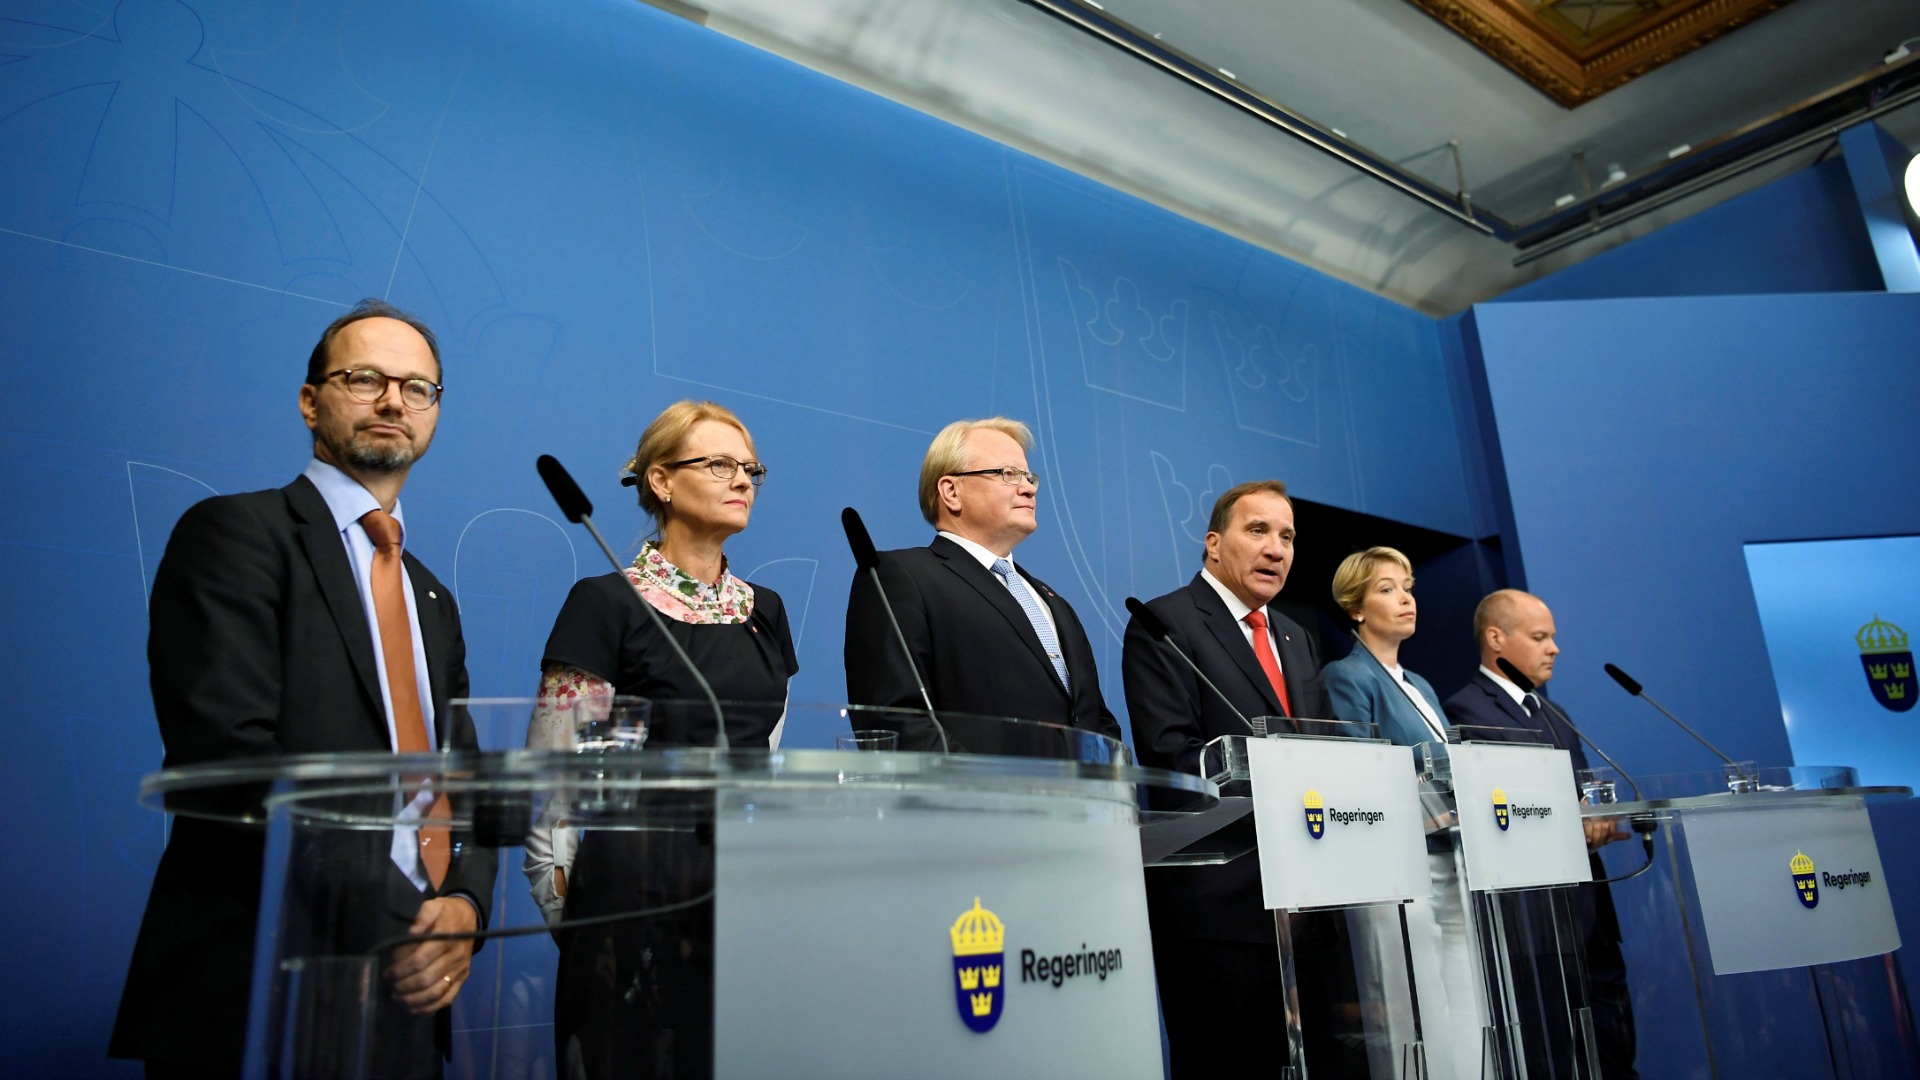 Crisis de gobierno en Suecia tras la filtración de datos confidenciales